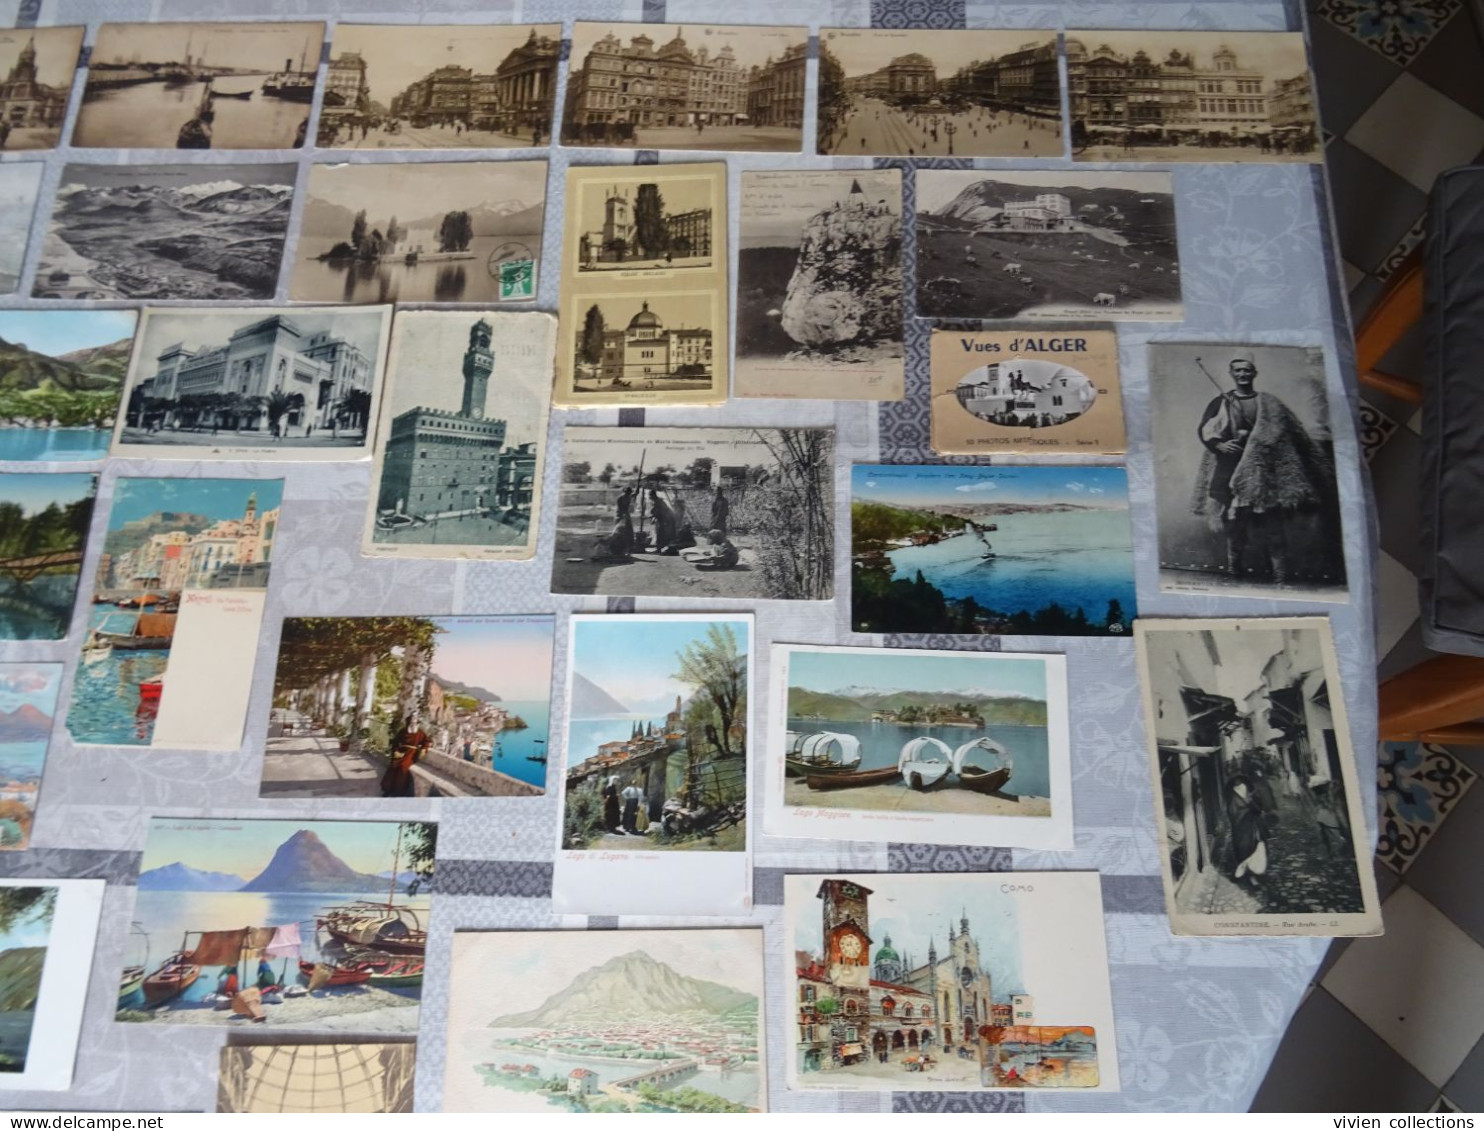 2 grandes boites de cartes postales anciennes France et étranger